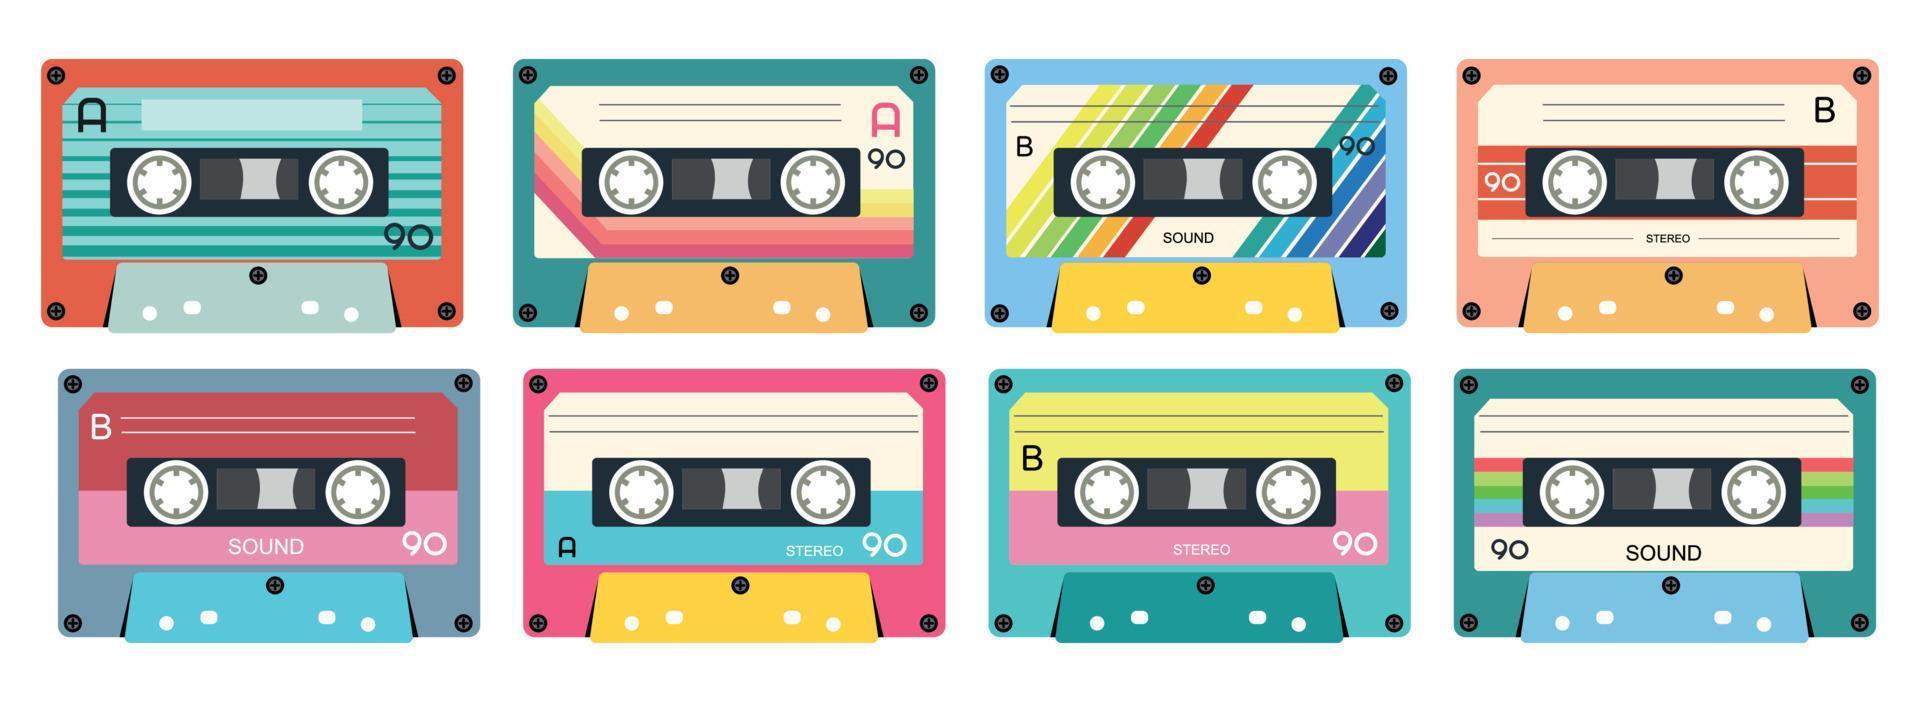 retro musik kassett. stereo dj tejp, årgång 90s kassetter band och audio tejp. antik radio spela kassett, 1970-talet eller 1980 sten musik blanda ljudkassett. isolerat ikoner uppsättning vektor